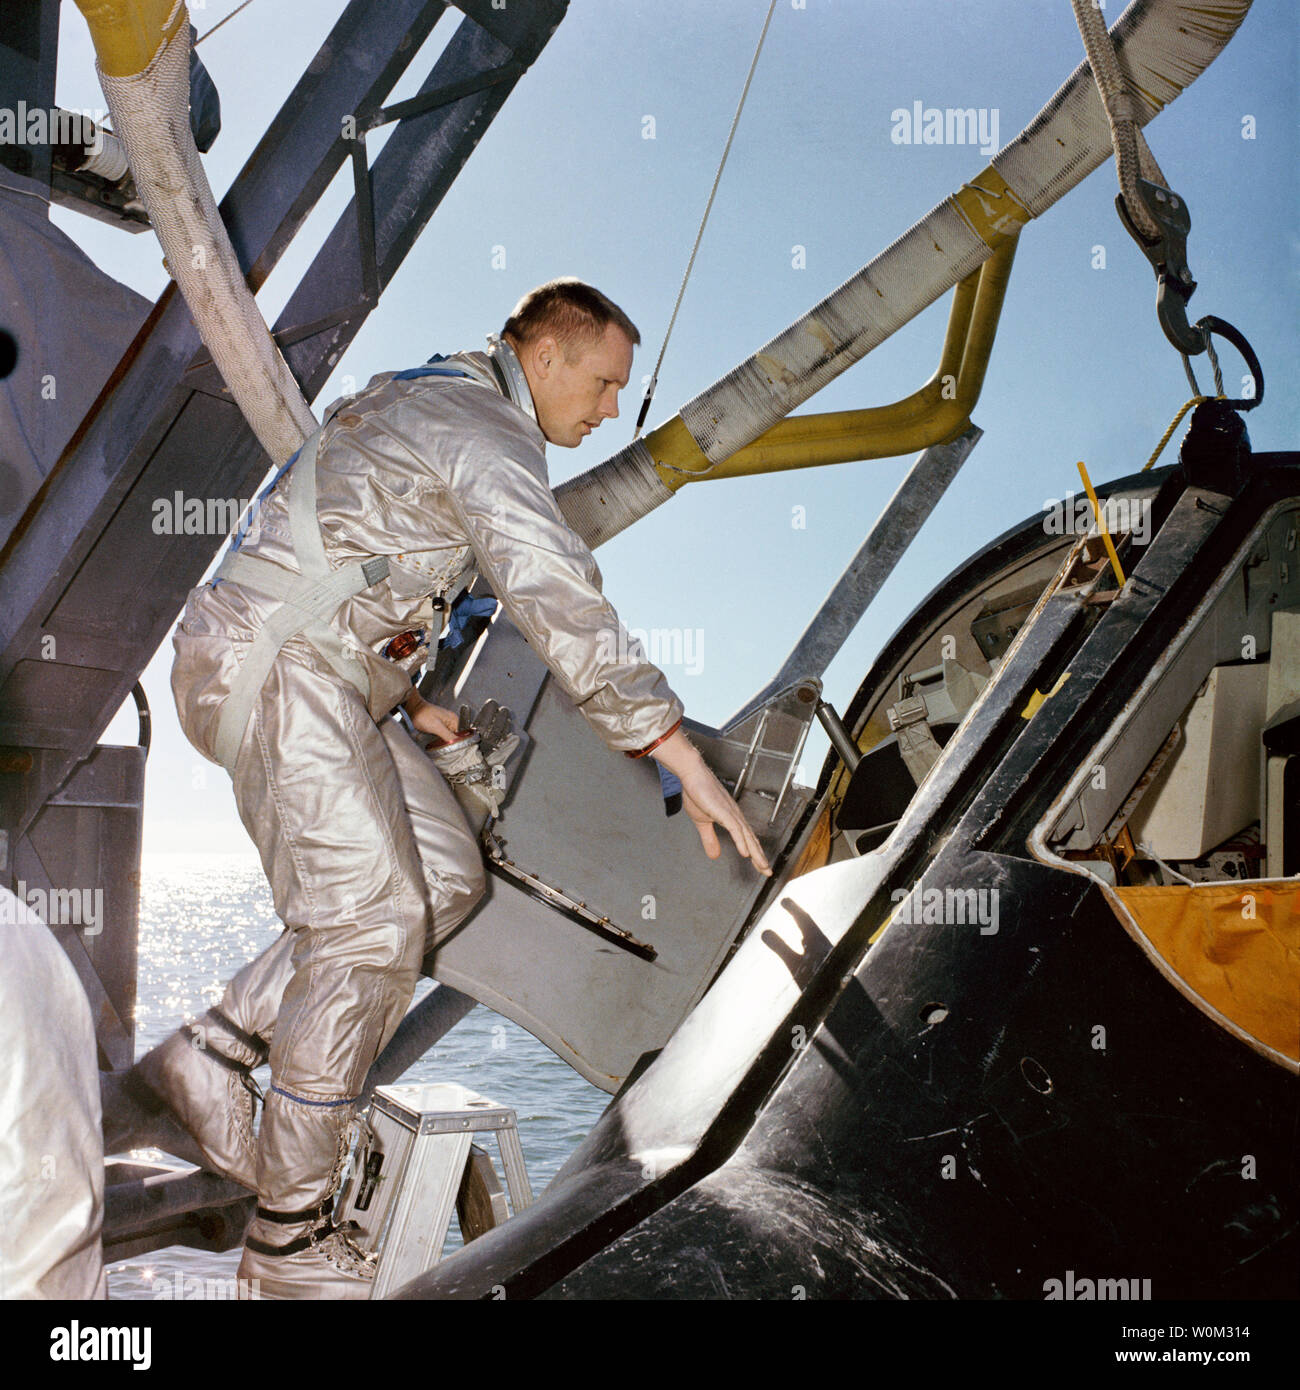 NASA-Astronaut Neil Armstrong, Prime crew Befehl pilot auf Gemini 8, steigt in ein Modell in Originalgröße der Gemini spacecraft während Wasser egress Training am Golf von Mexiko im Januar 15, 1966. März 16, 2016 markiert den 50. Jahrestag der NASA Gemini 8 Mission, das sechste bemannte Raumfahrt während Projekt Gemini Programms der Vereinigten Staaten durchgeführt. Das Hauptziel der Mission, dem erfolgreichen Andocken von zwei Satelliten im Orbit, ein Novum in der Raumfahrt, war ein Erfolg, obwohl die Besatzung einen kritischen in-space system Ausfall würde erfahren, der sie zwingt, die Mission vorzeitig zu verlassen. Stockfoto